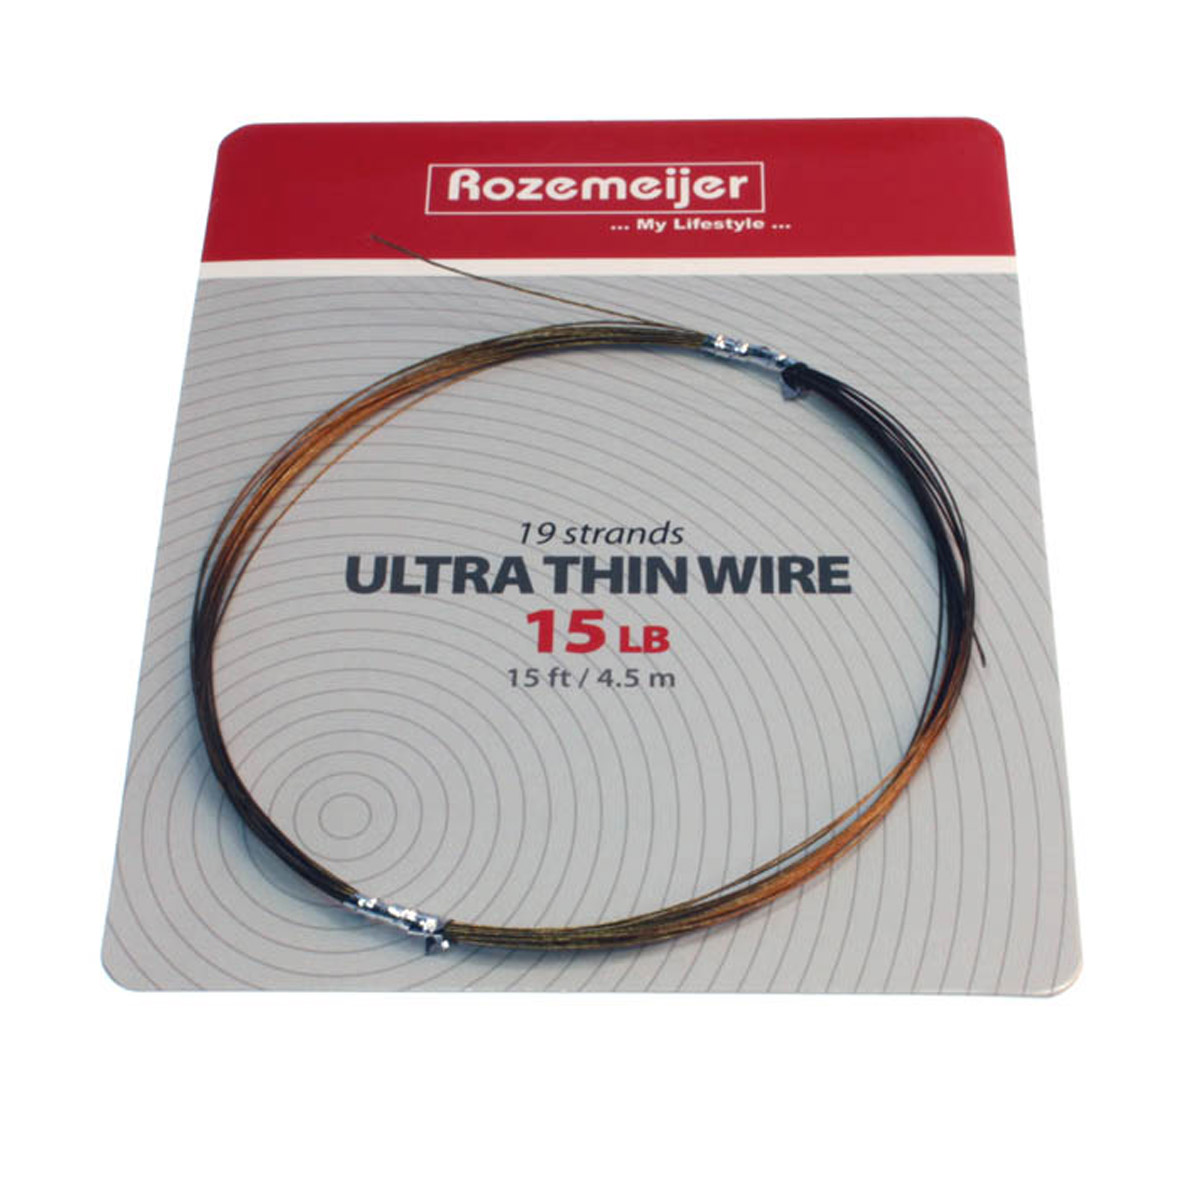 Rozemeijer Ultra Thin Wire 15lb Leadermateriaal